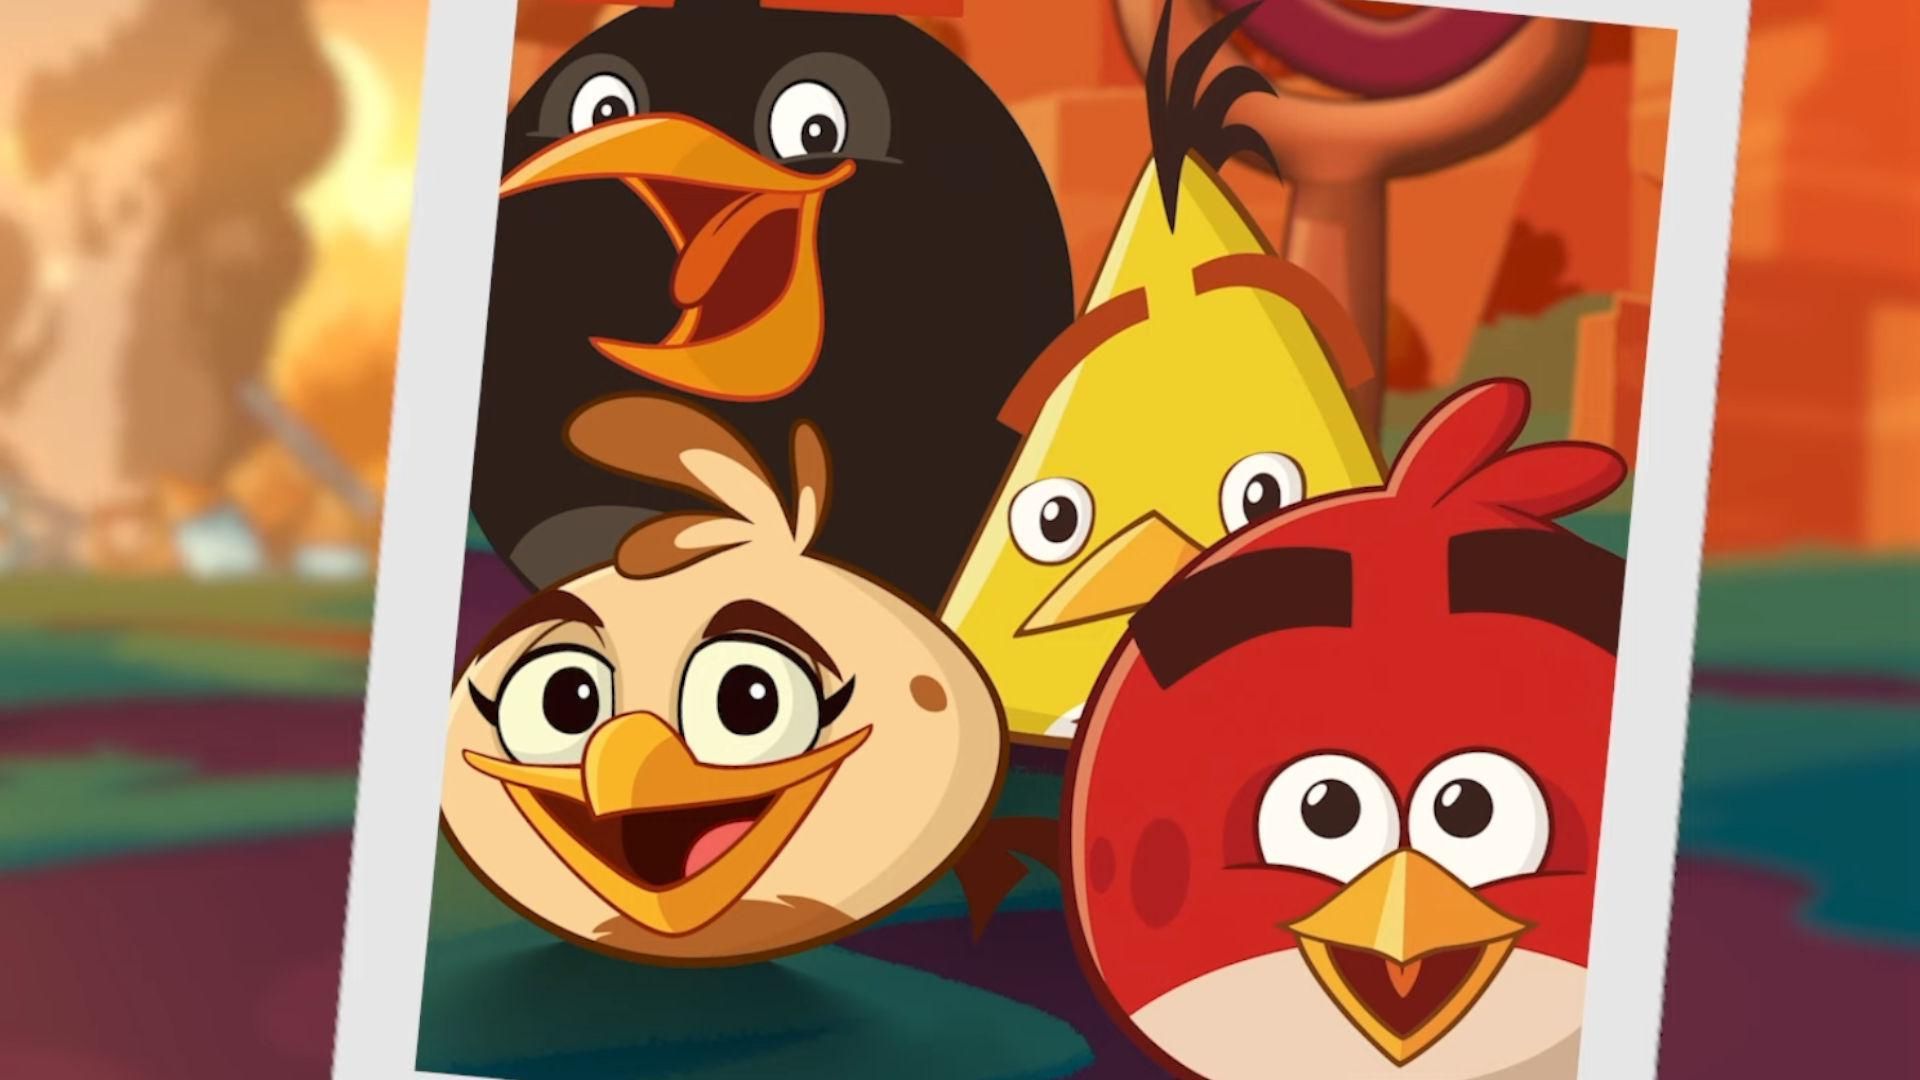 Melody, un nuovo uccello protagonista con abilità musicali eccezionali, si è unito ad Angry Birds 2. Ti starai chiedendo come sbloccare Melody in Angry Birds 2.... 